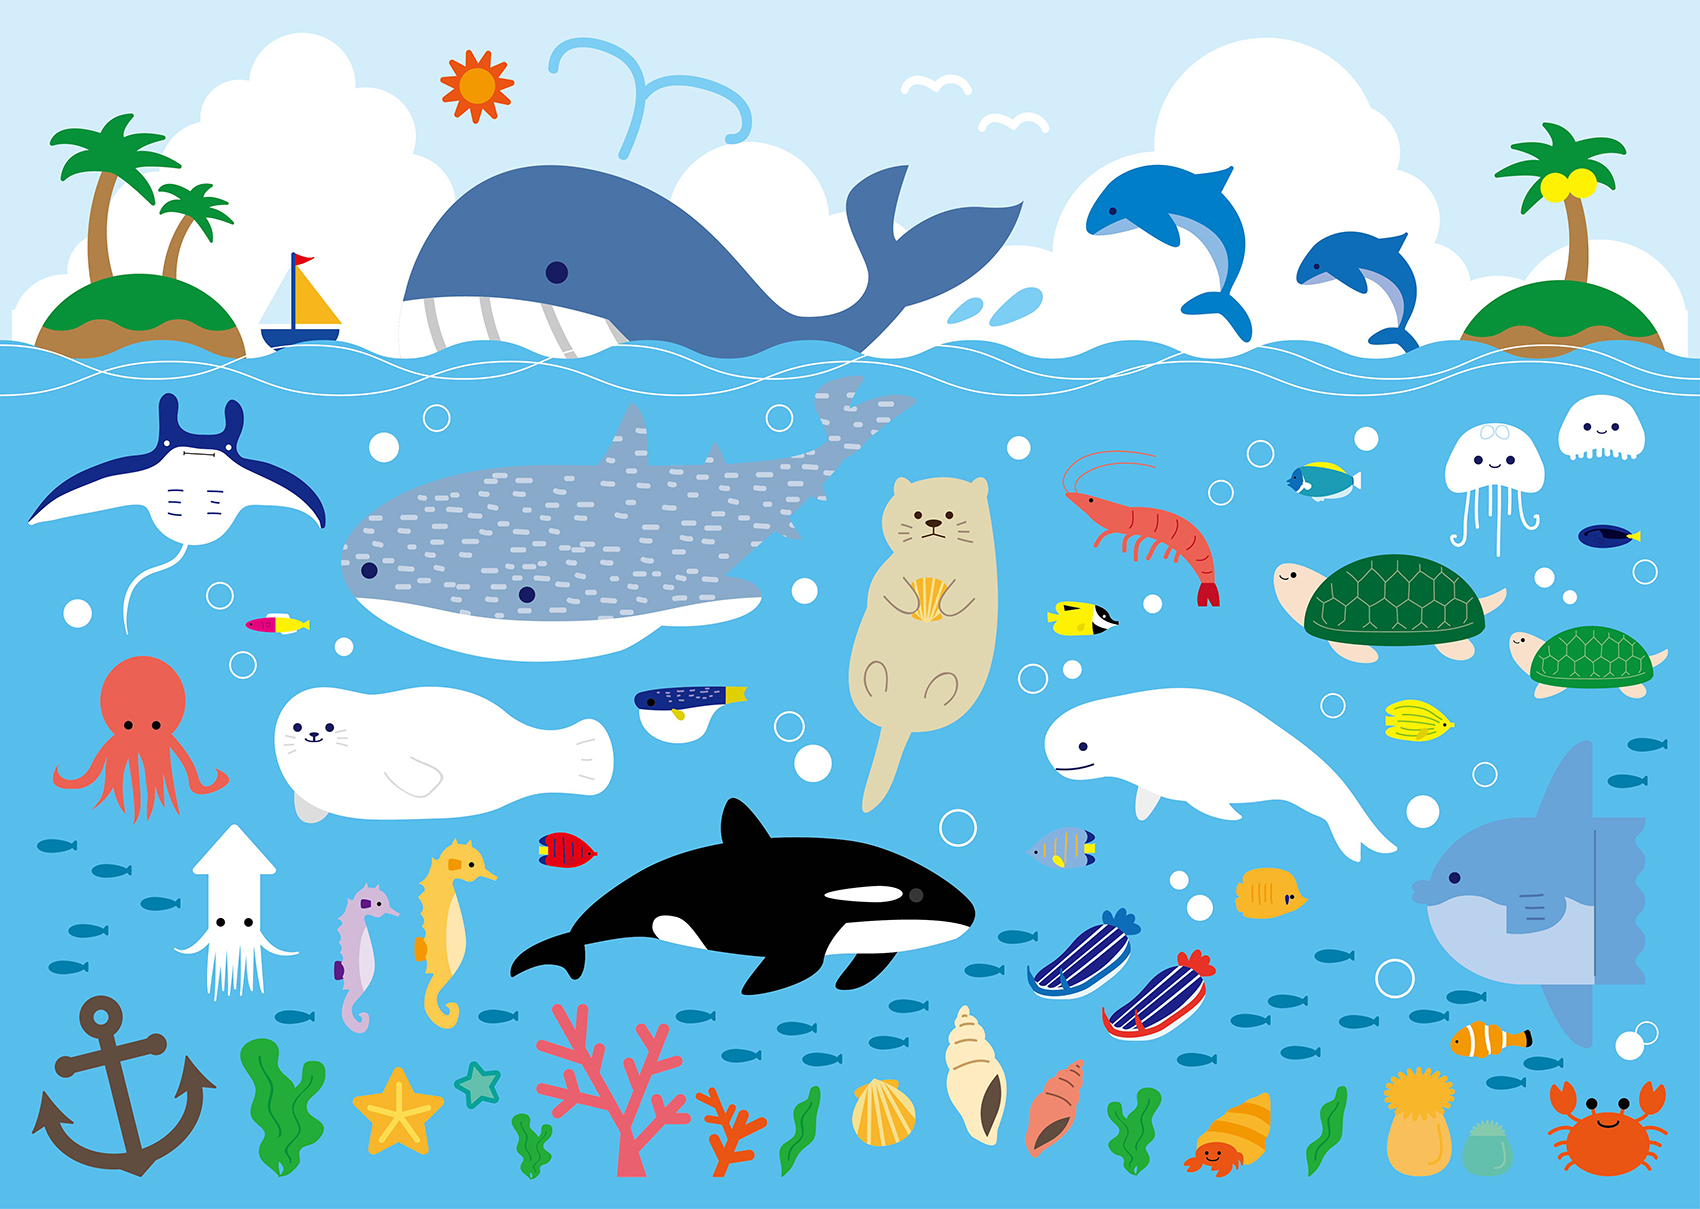 海 の 生き物 イラスト 海のプラスチックごみを減らし きれいな海と生き物を守る プラスチック スマート キャンペーン